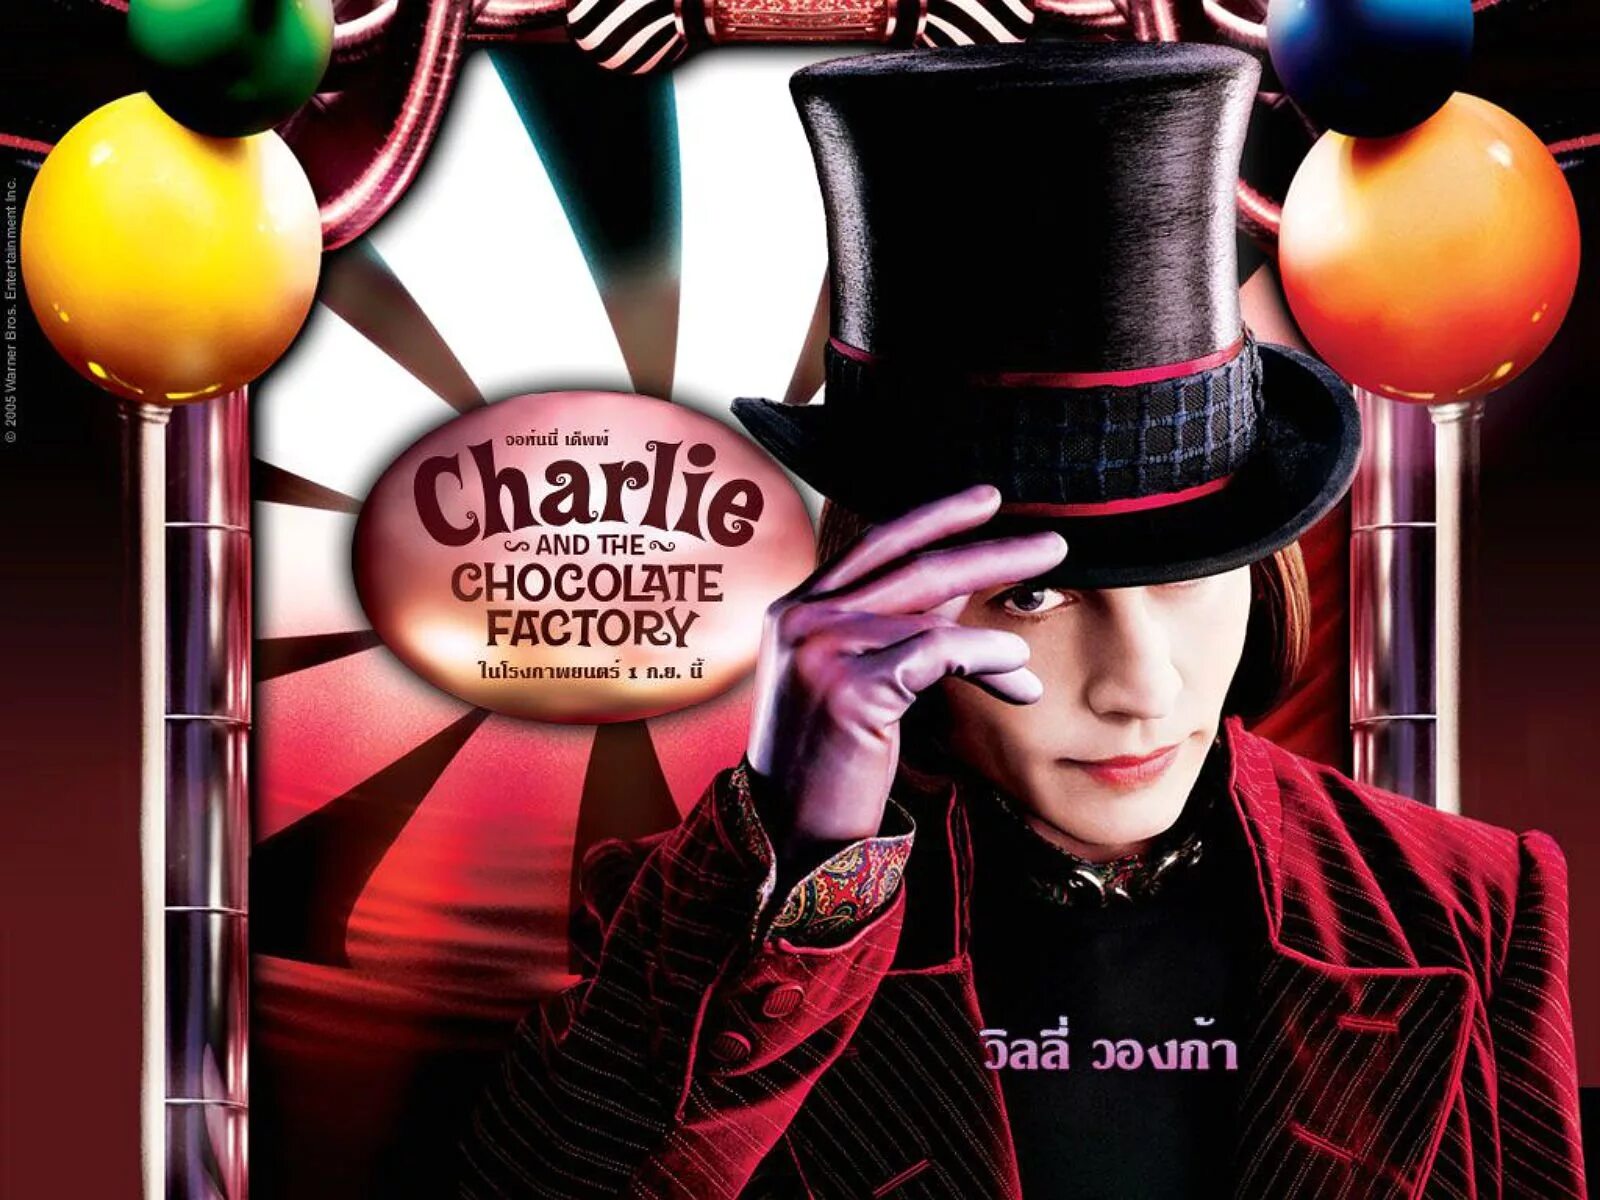 Чарли и шоколадная фабрика фанфики. Джонни Депп Чарли и шоколадная фабрика. Чарли и шоколадная фабрика / Charlie and the Chocolate Factory (2005).